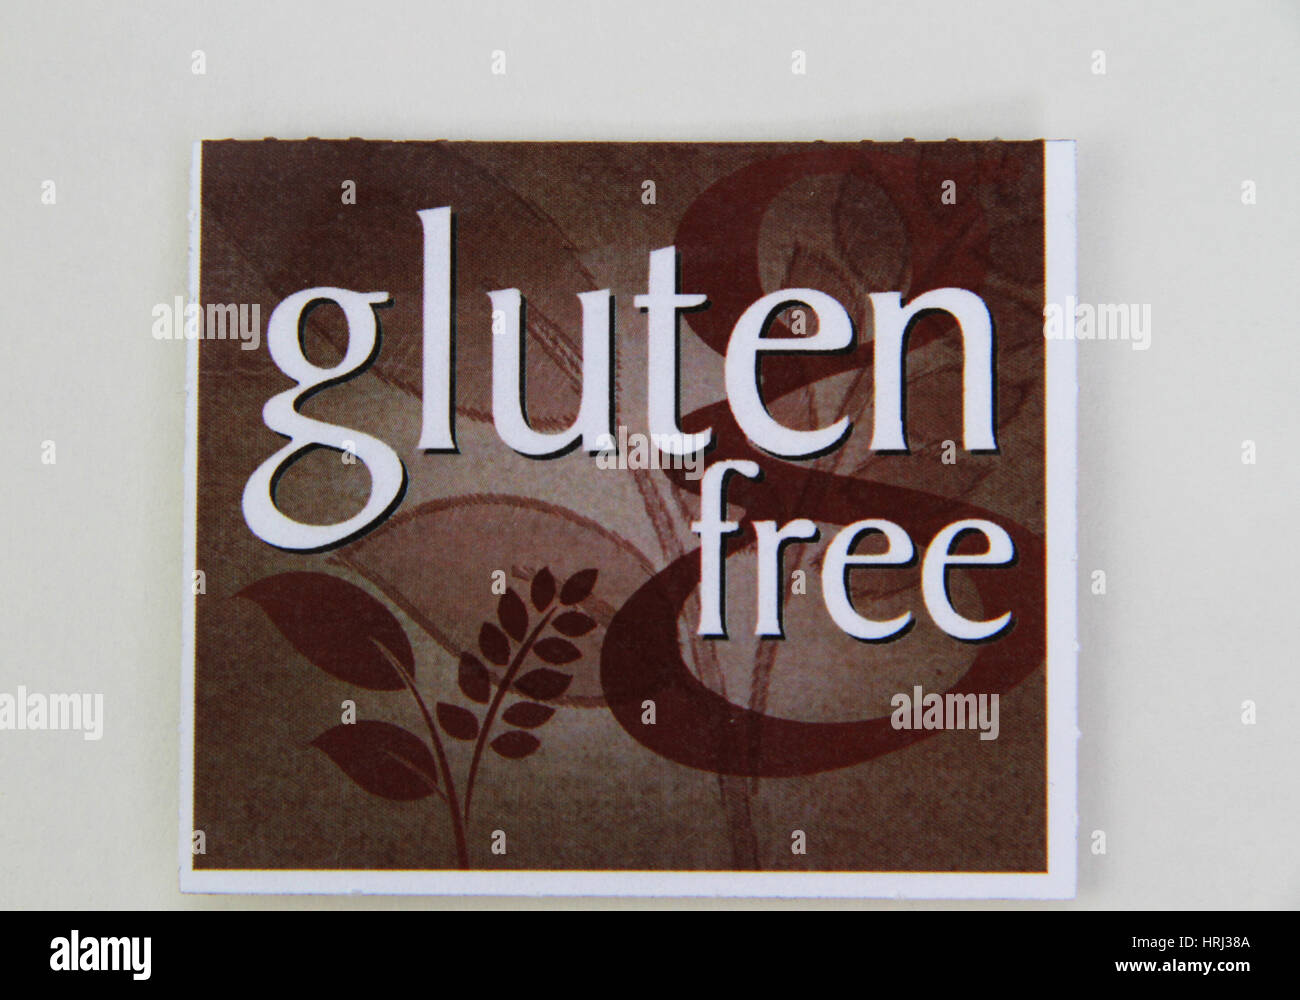 Gluten Free Stock Photo